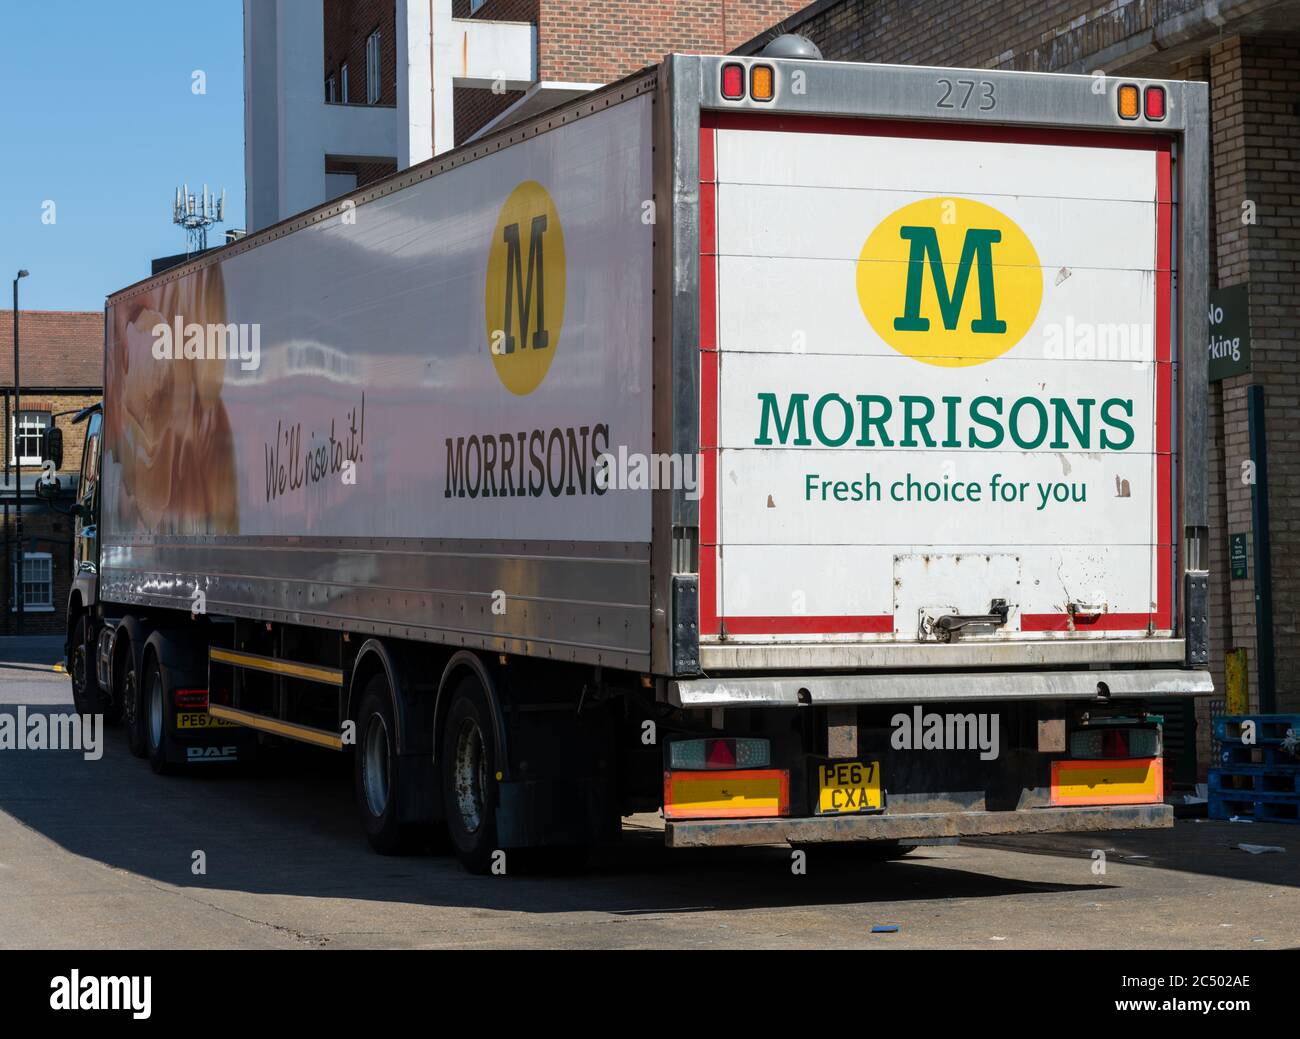 Un supermercado Morrisons logística distribución camiones de mercancías pesadas haciendo un delivey a su tienda Wood Green. Foto de stock